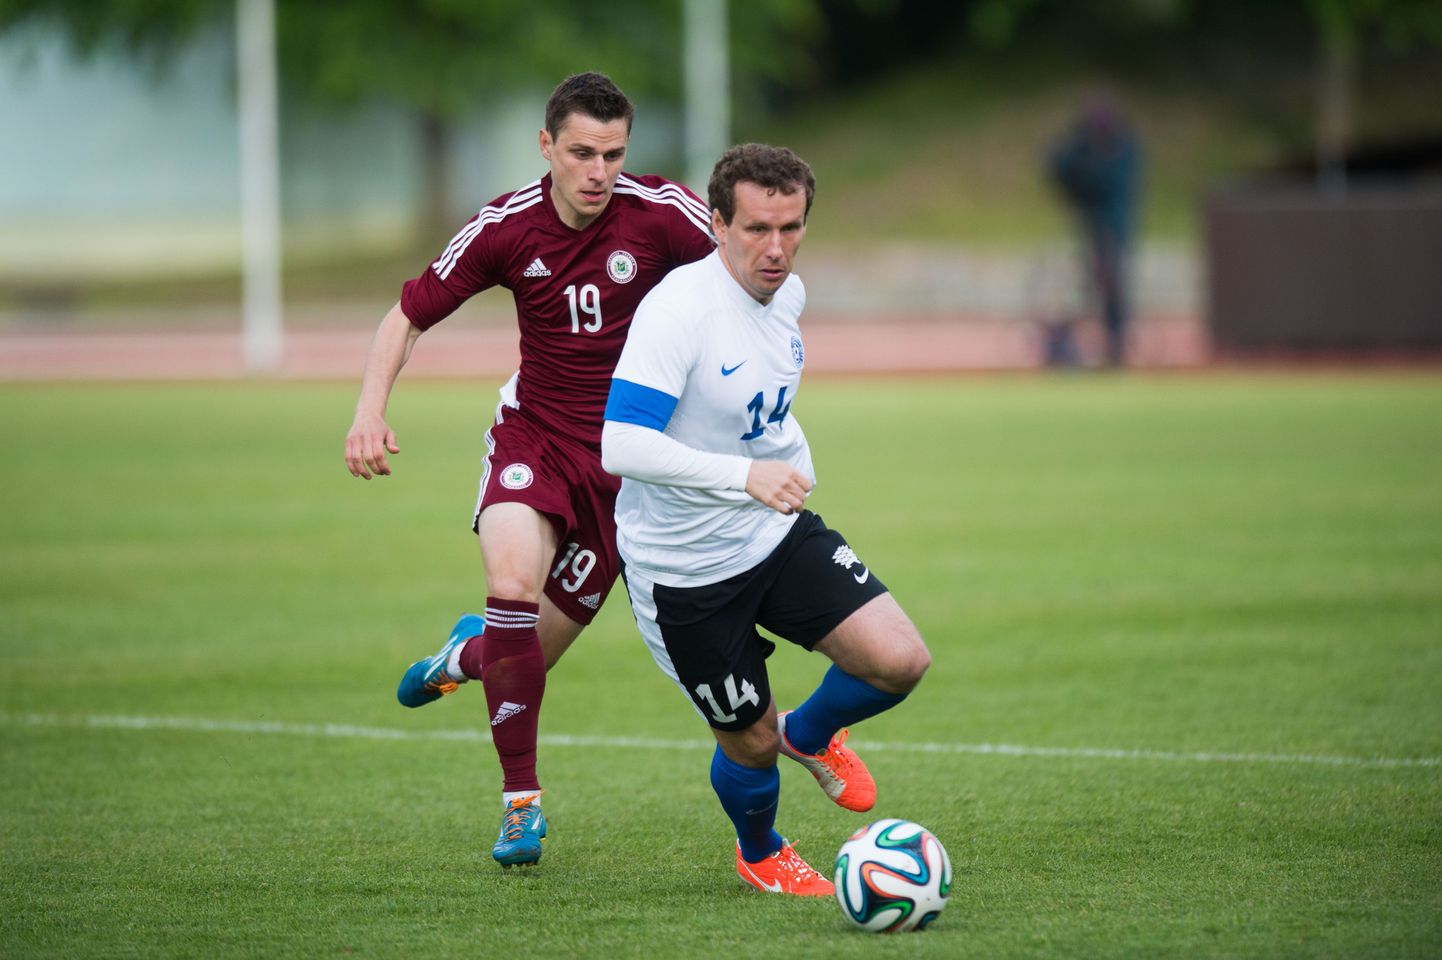 Eesti jalgpallikoondis pidi Balti turniiri poolfinaalis tunnistama peanltiseeria järel Läti 4:2 paremust.